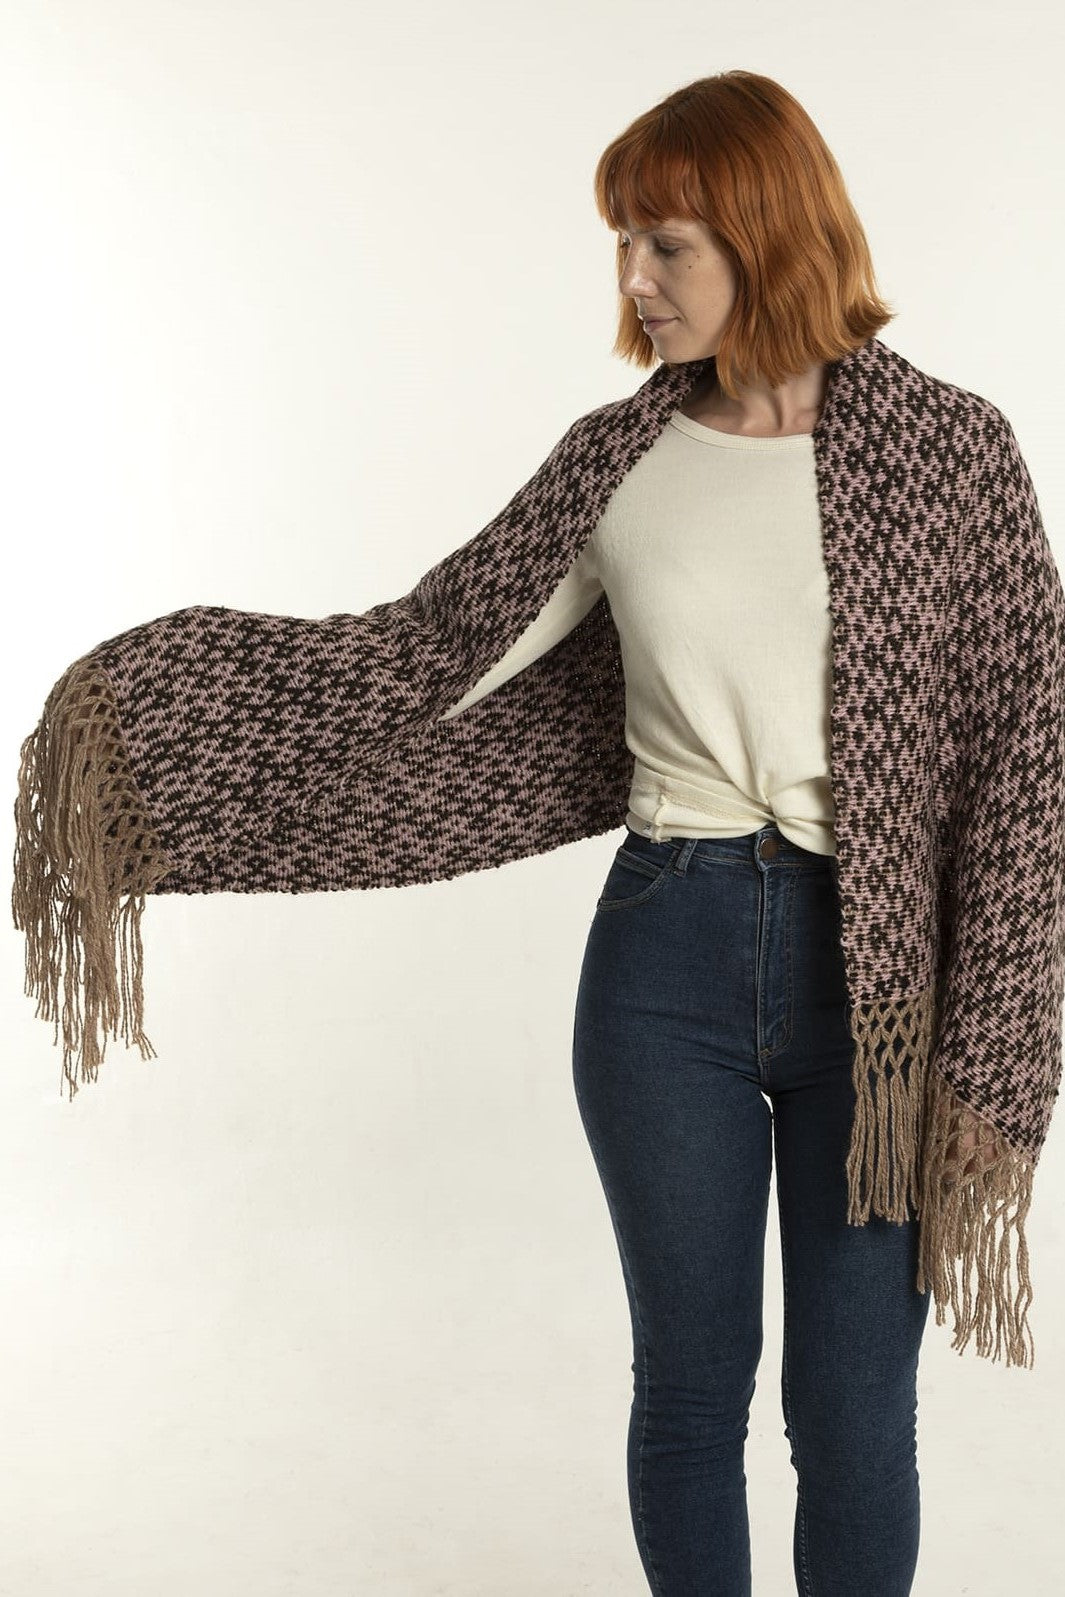 Llama wool scarf with pattern